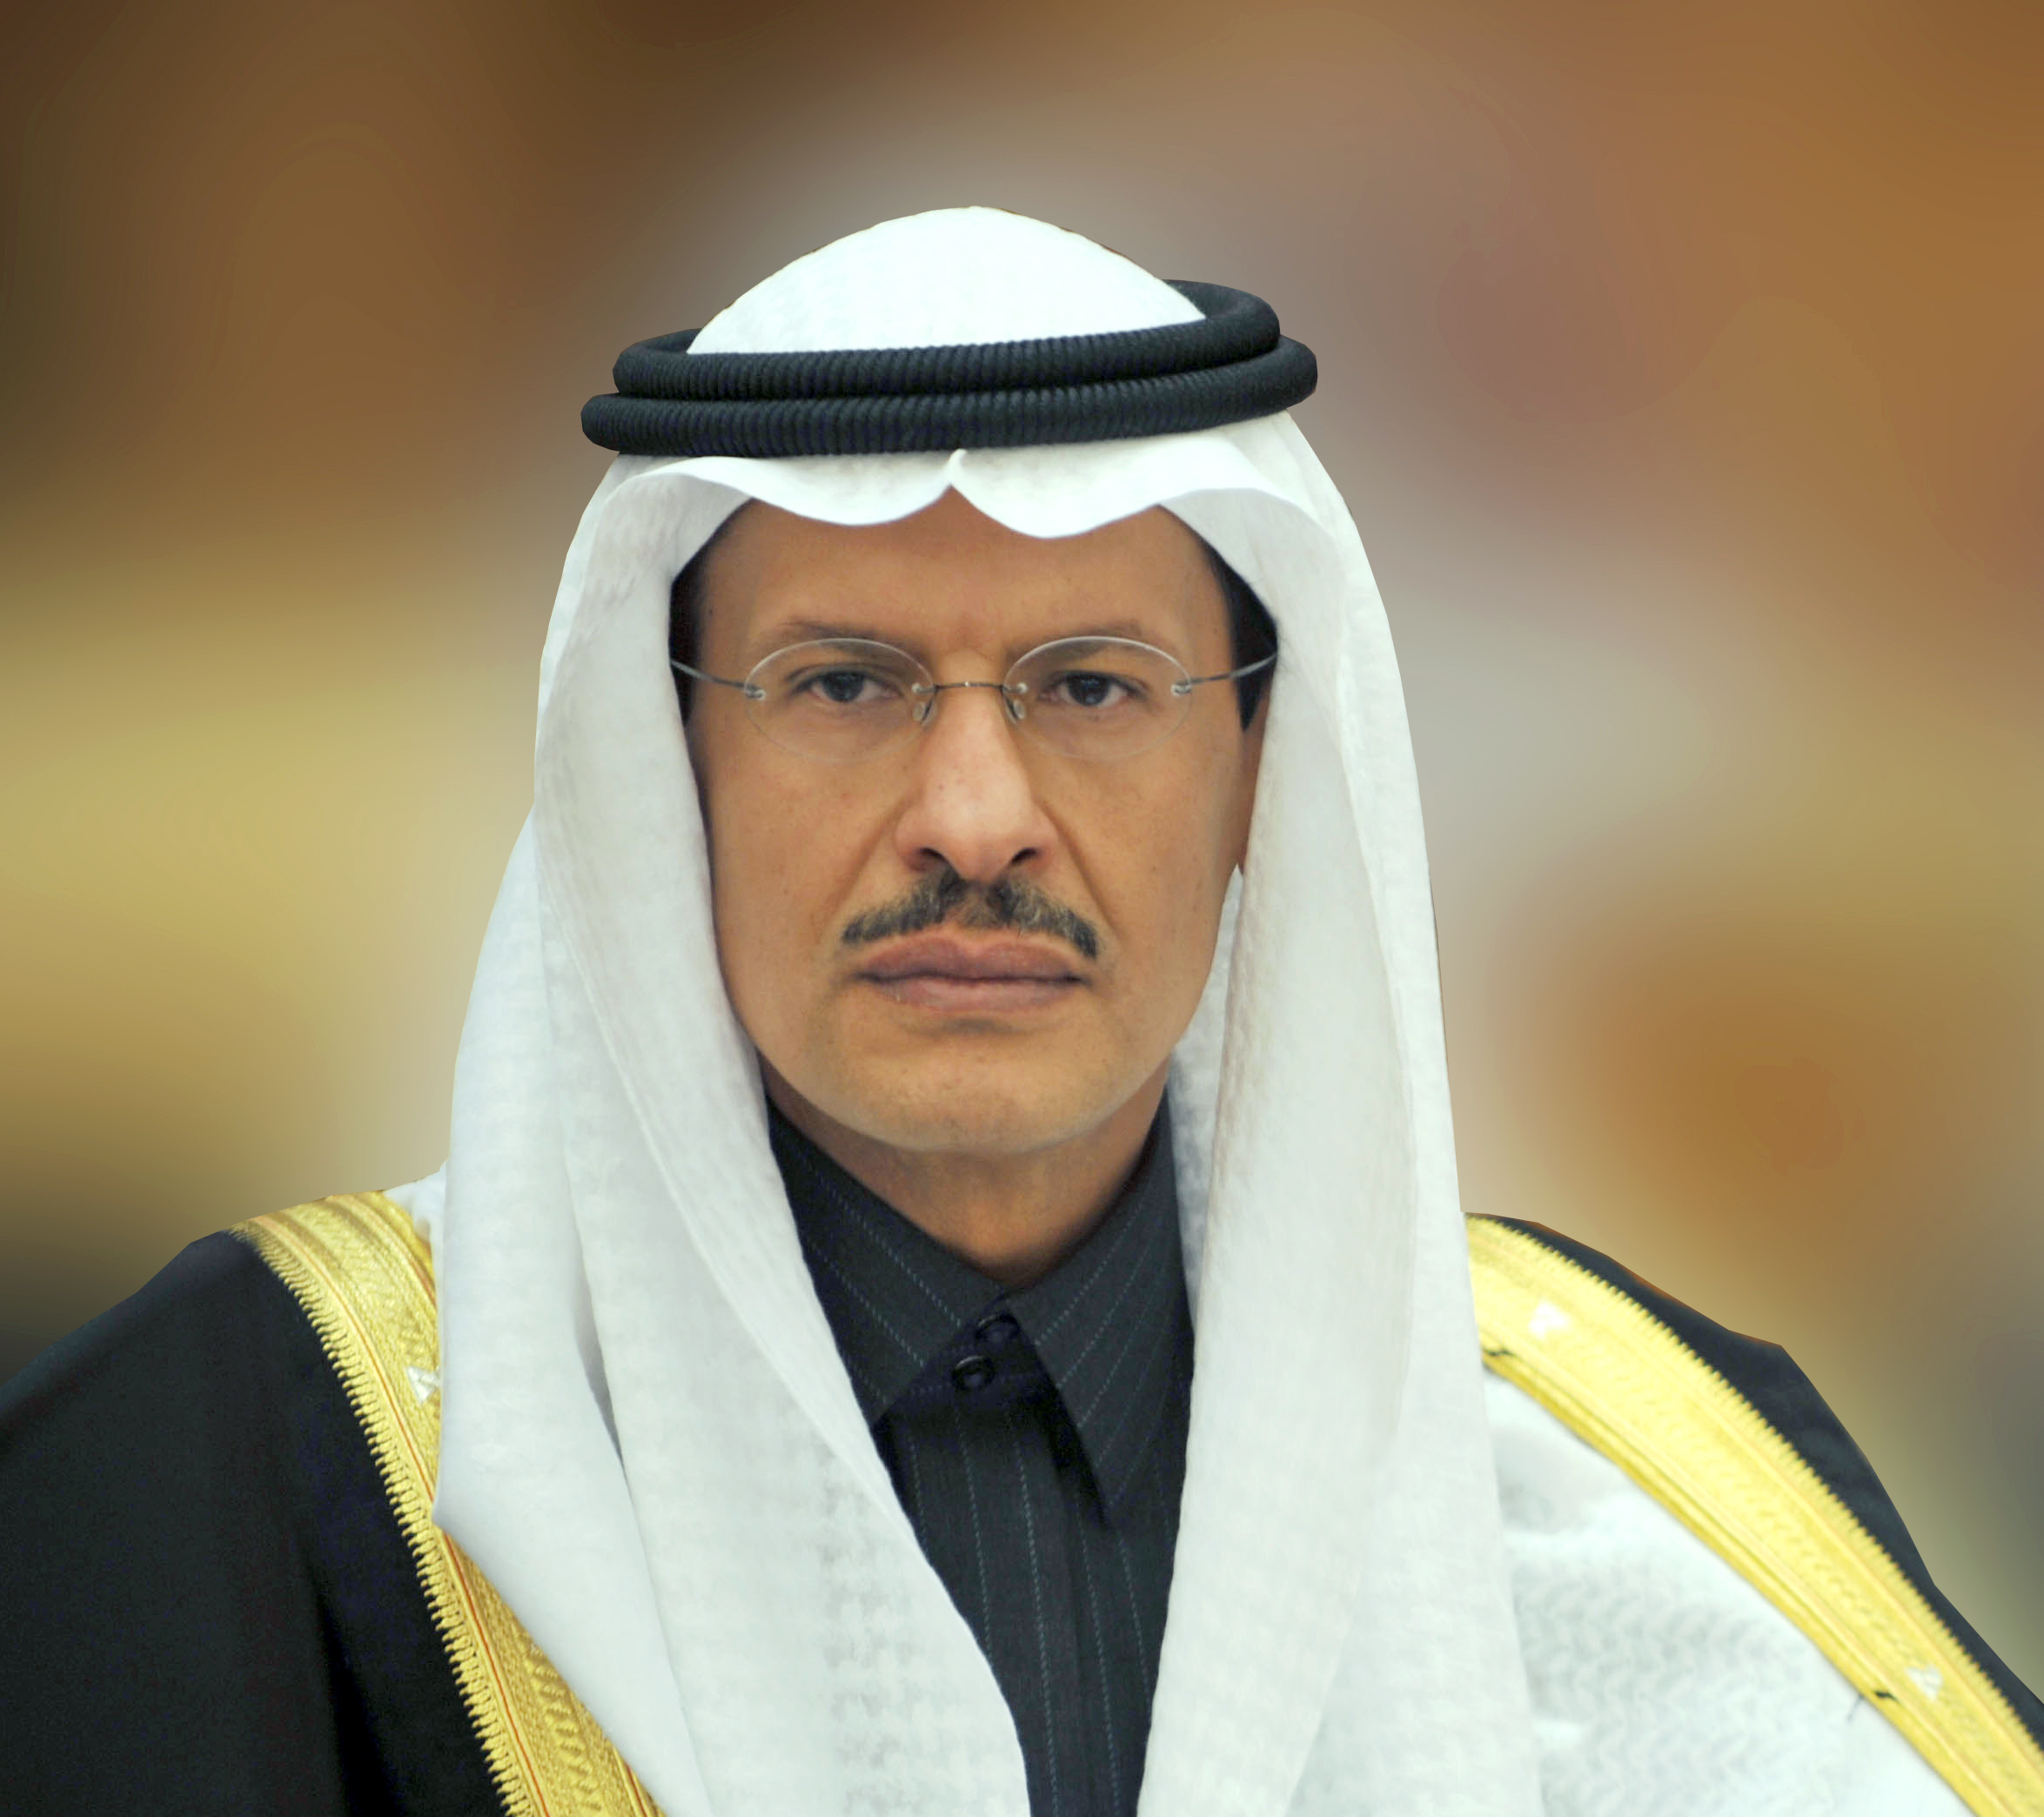 سموُّ وزير الطاقة : تعاونُ المملكةِ مع الدول العربية في مجالات الطاقة جزءٌ لا يتجزَّأ من اهتمامها بعمقها العربي